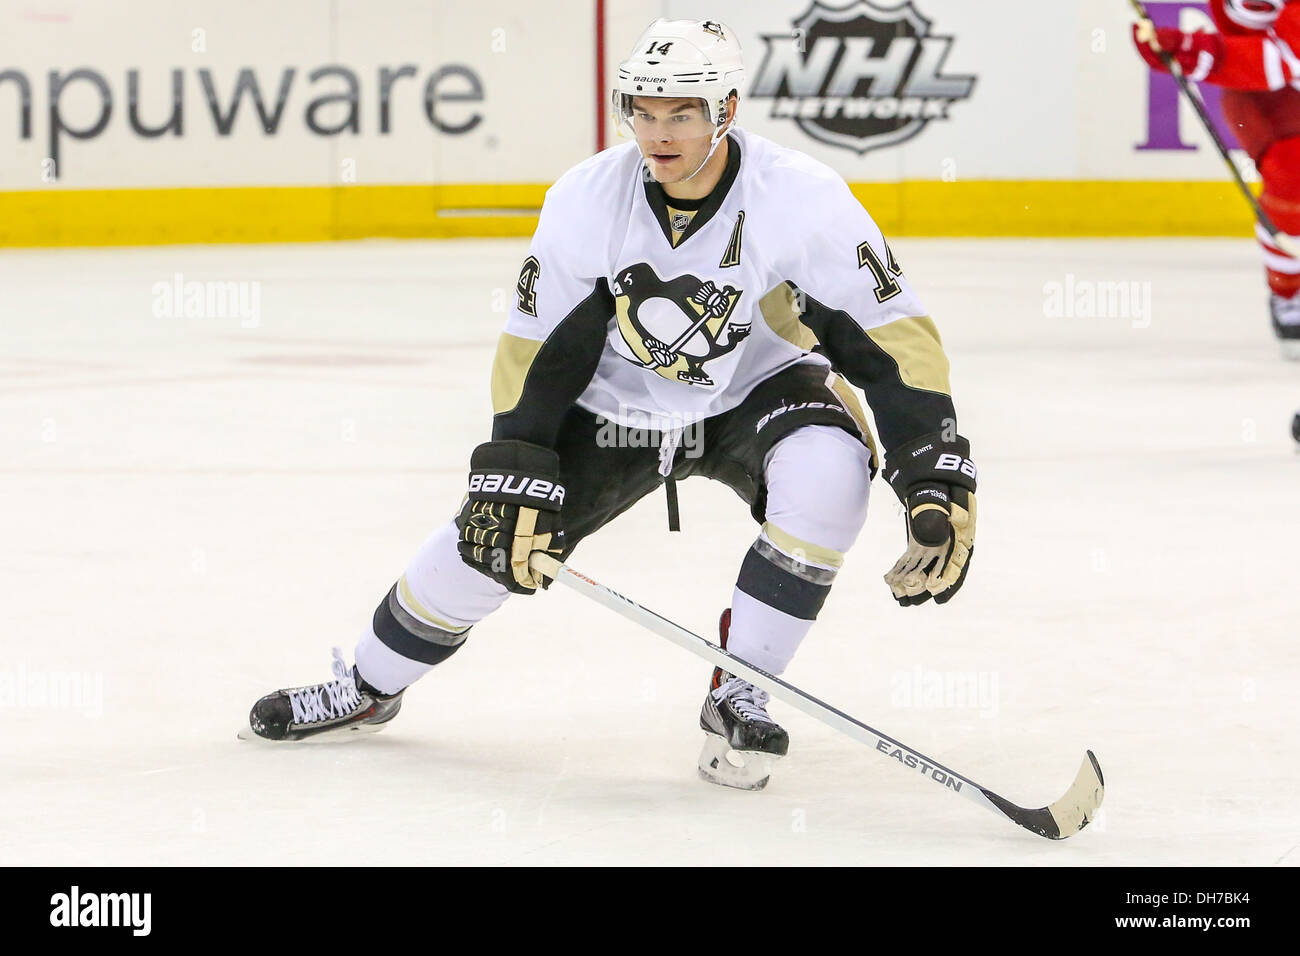 Pittsburgh Penguins aile gauche Chris Kunitz (14) au cours de la saison LNH 2013-2014 Banque D'Images